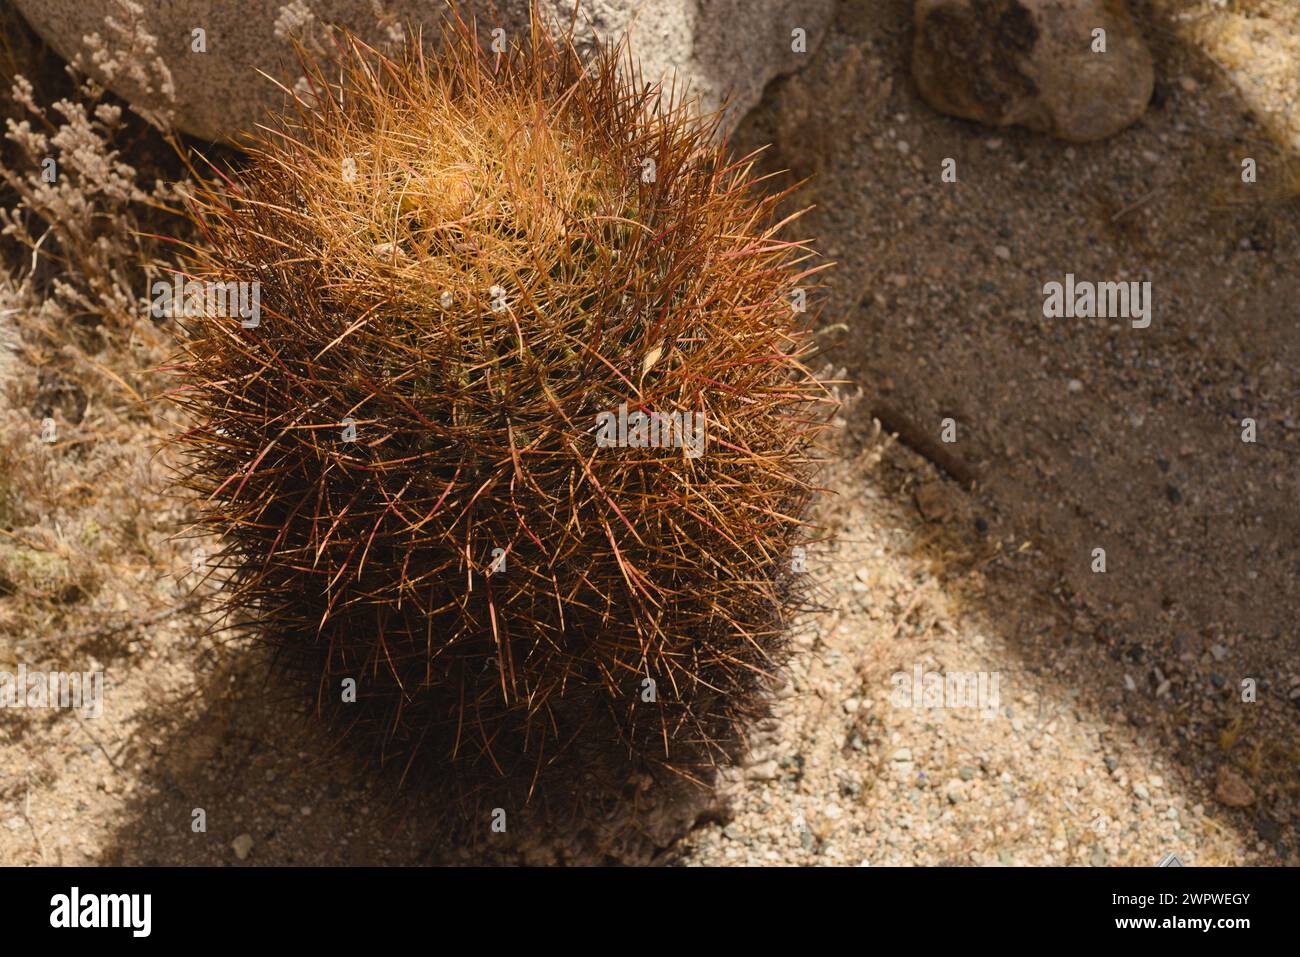 Cactus à baril unique brillant fièrement dans le chaud désert californien. Etude du déterminisme et de la survie. Forme, forme, motifs et texture intéressants. Banque D'Images